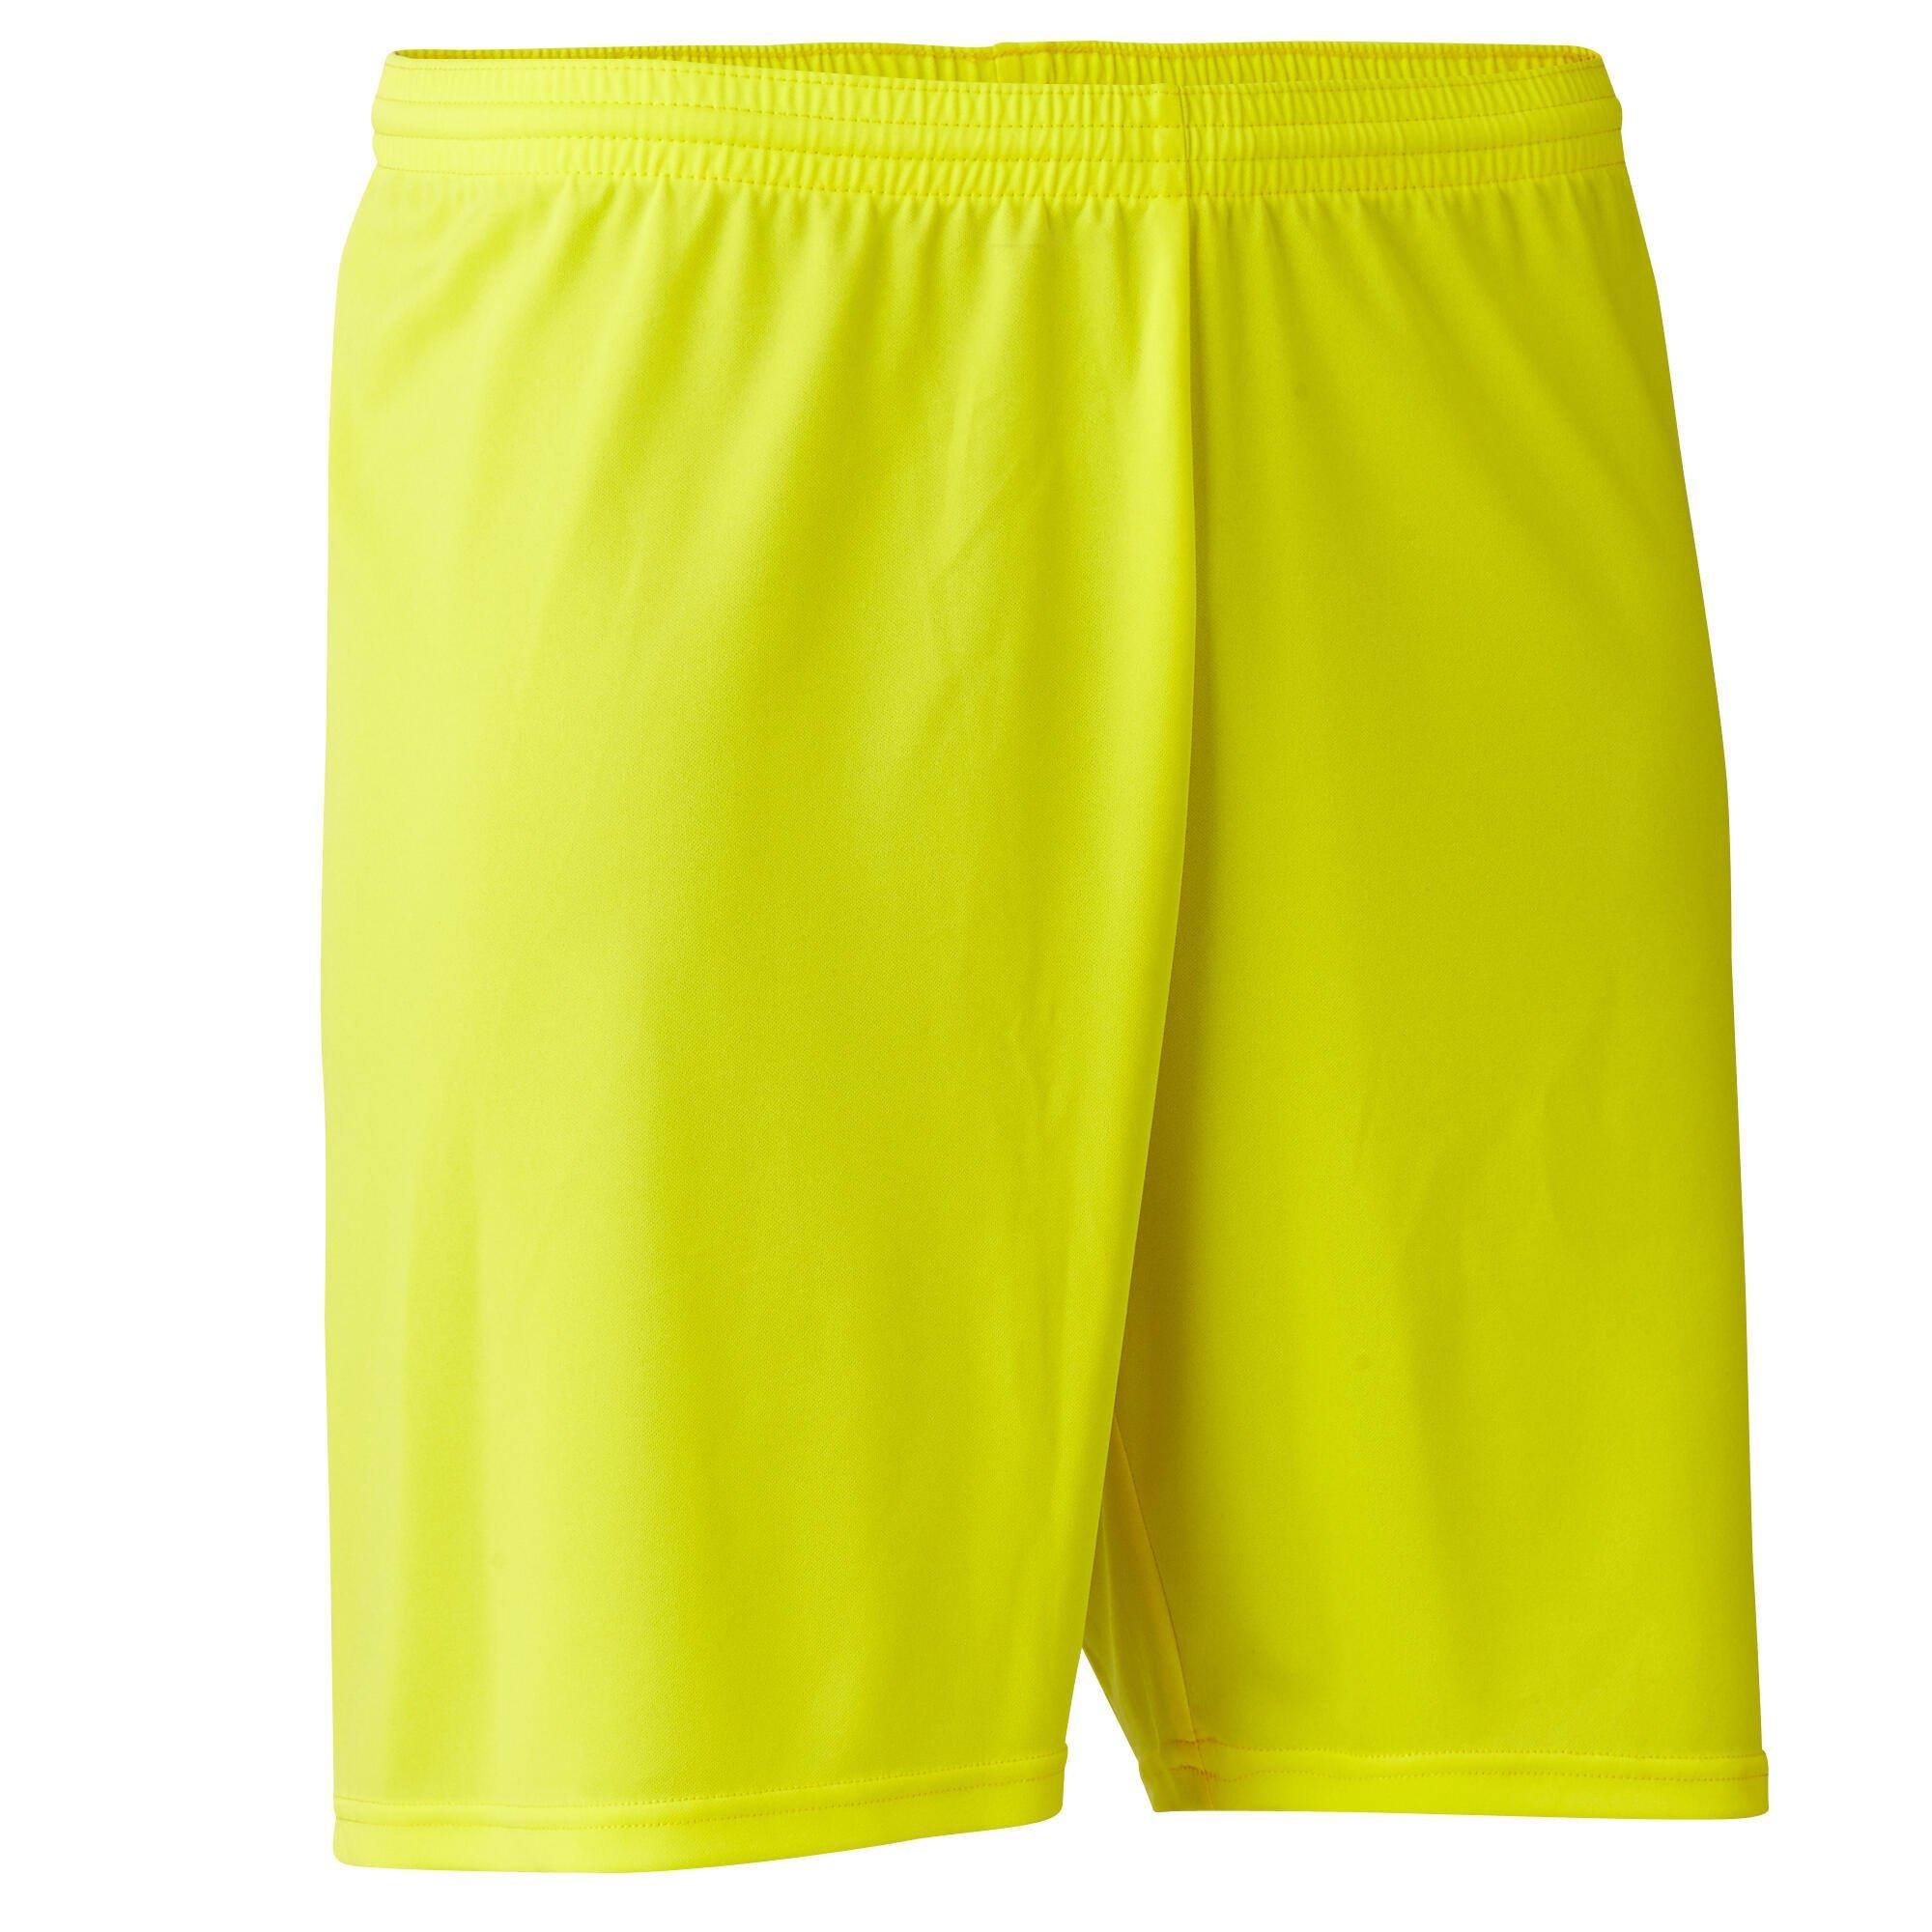 Футбольные шорты для взрослых Decathlon Kipsta, желтый